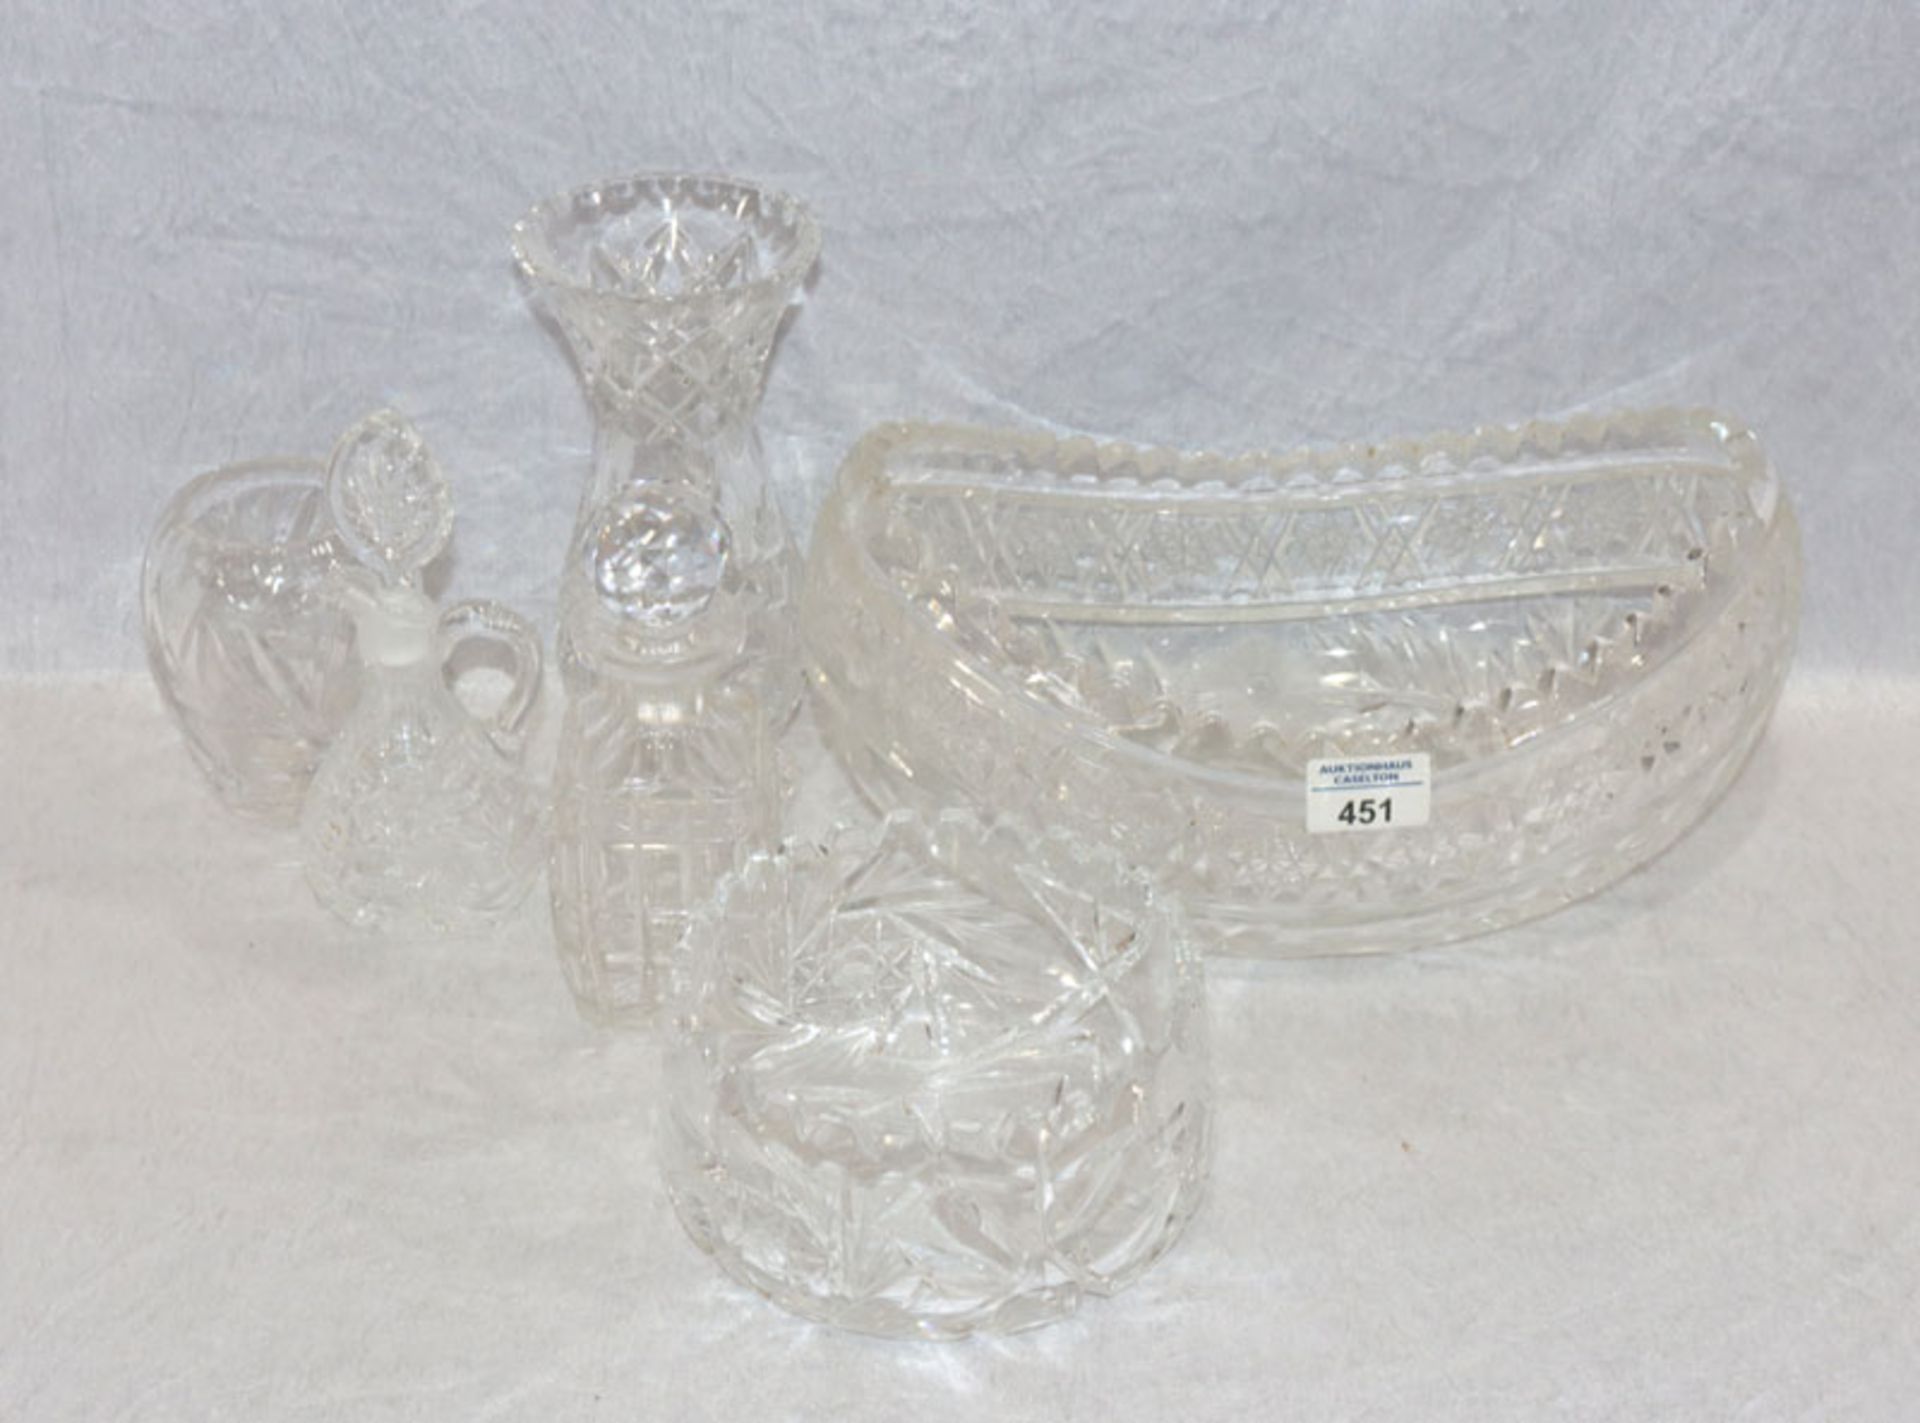 Kristallglas-Konvolut: Ovale Schale, runde Schale, 2 Vasen und Karaffe, verschiedene Schliffdekore